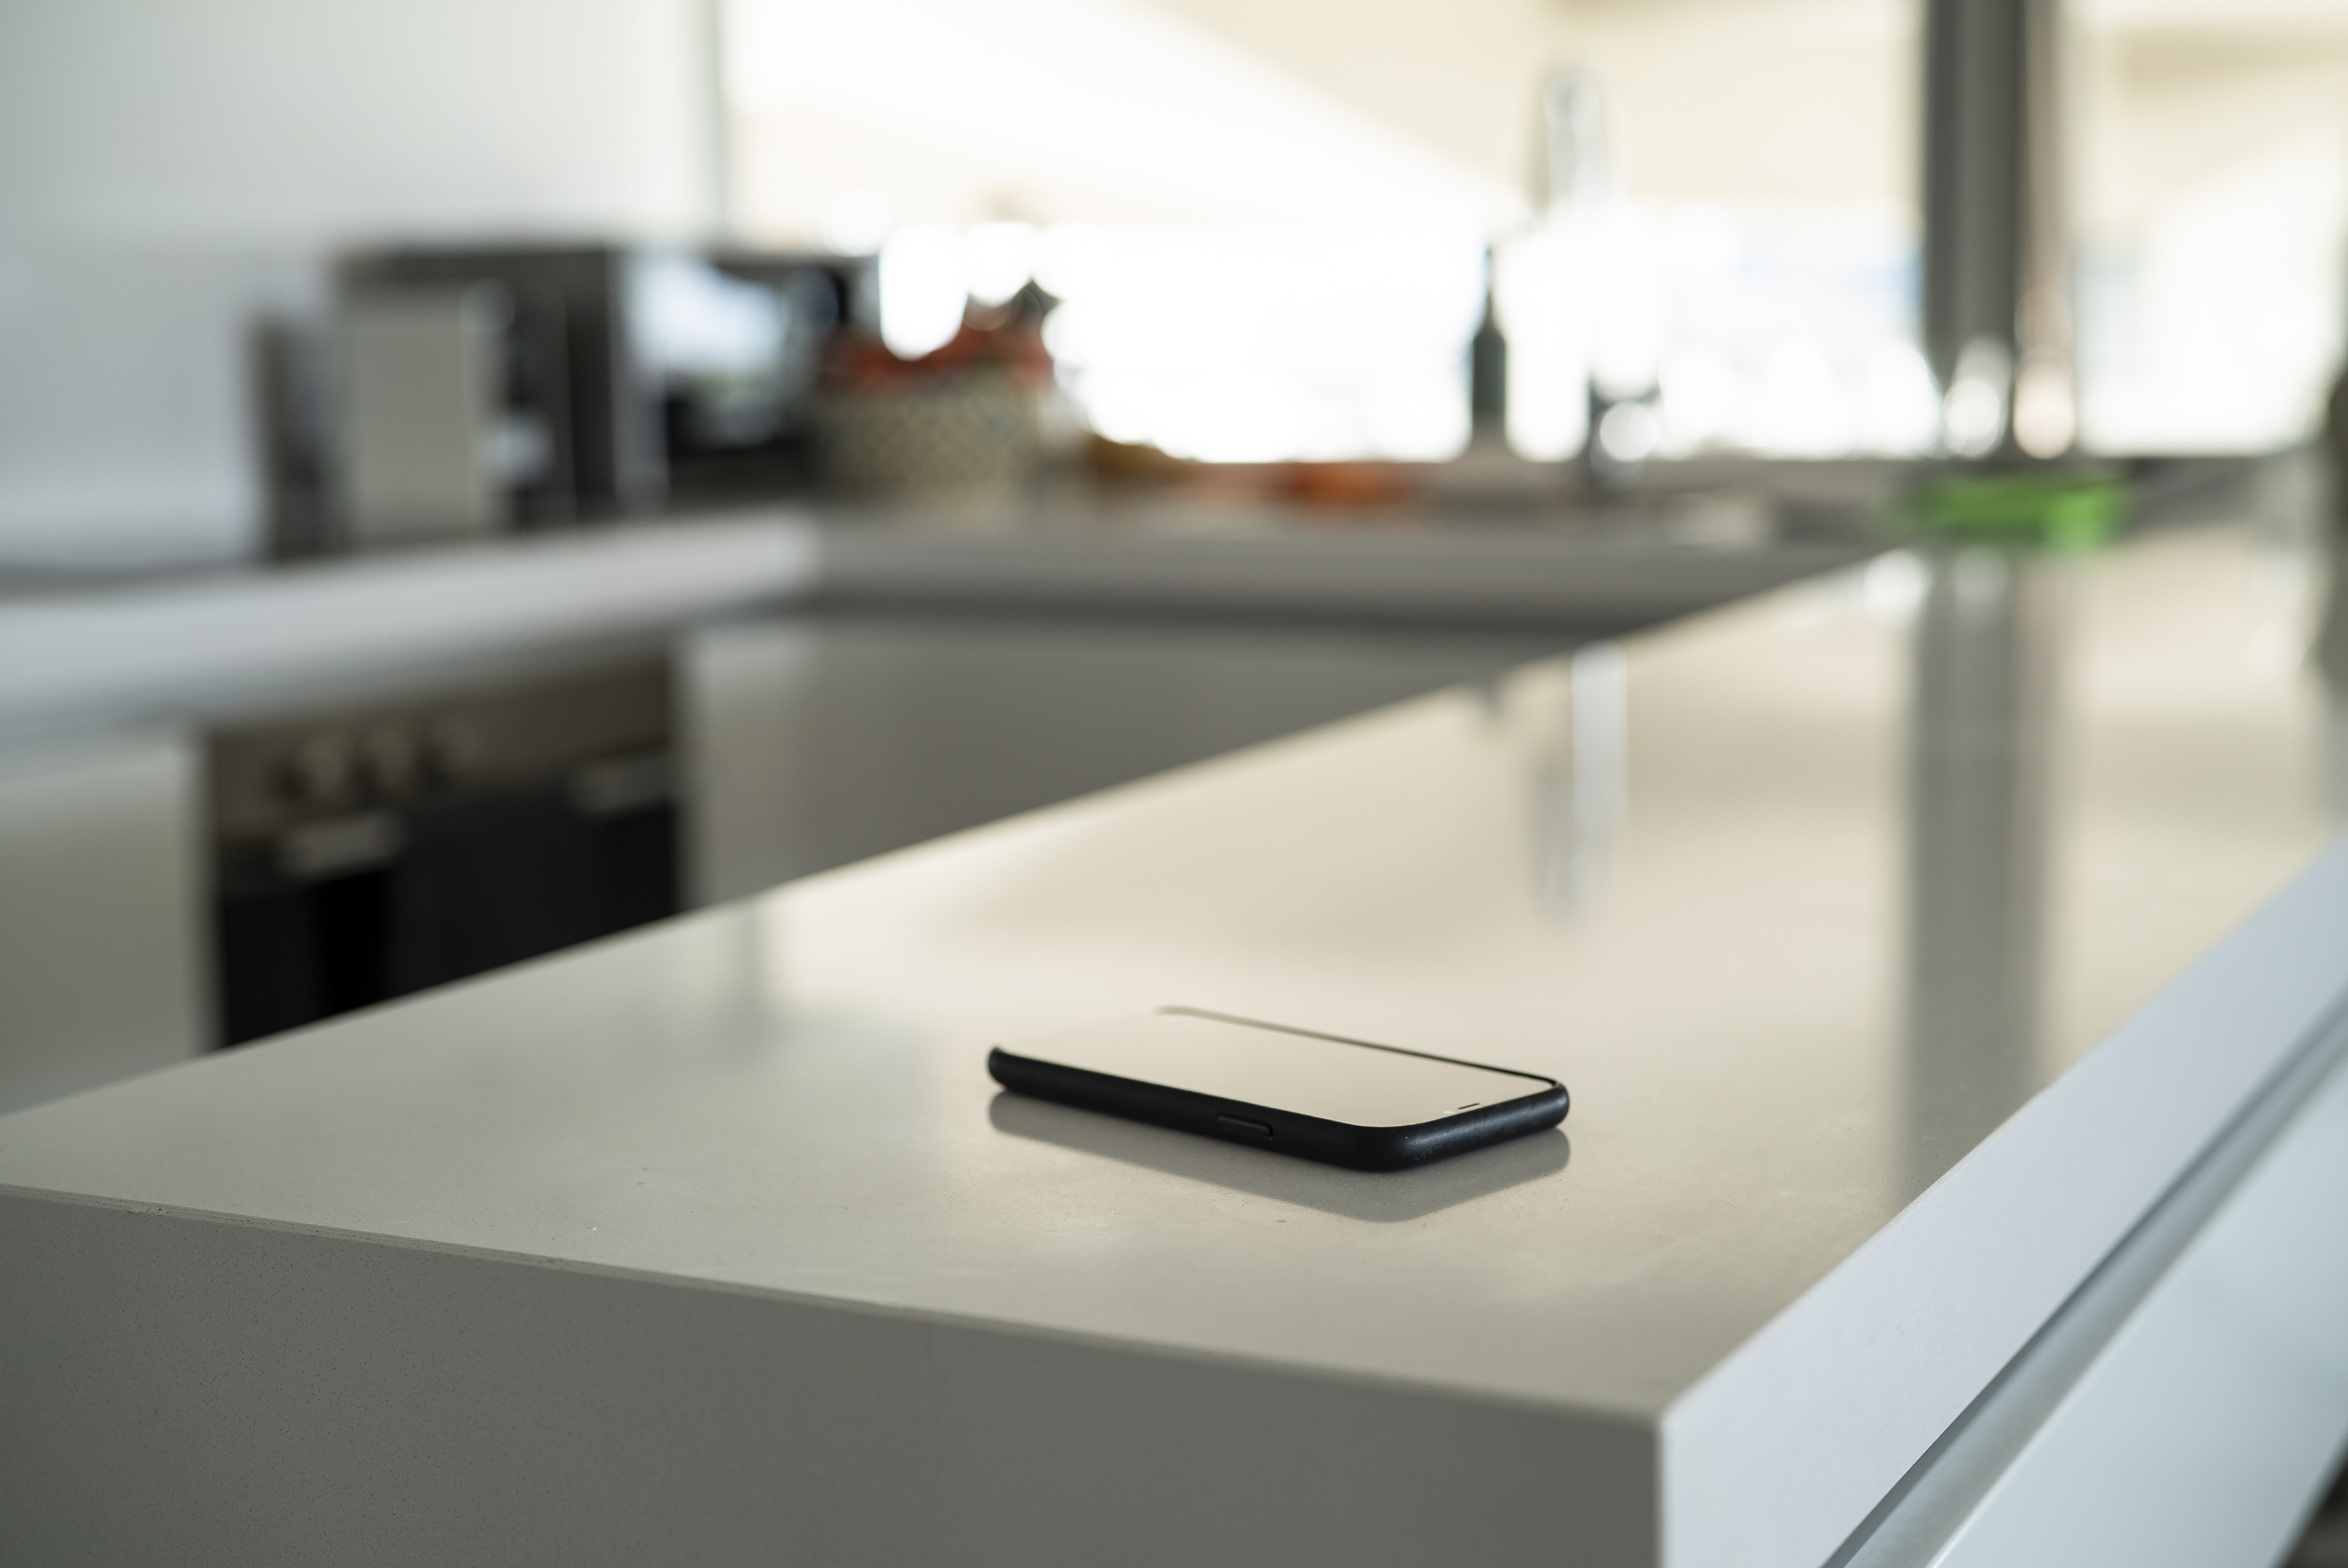 Un smartphone sur le comptoir de la cuisine | Source : Getty Images